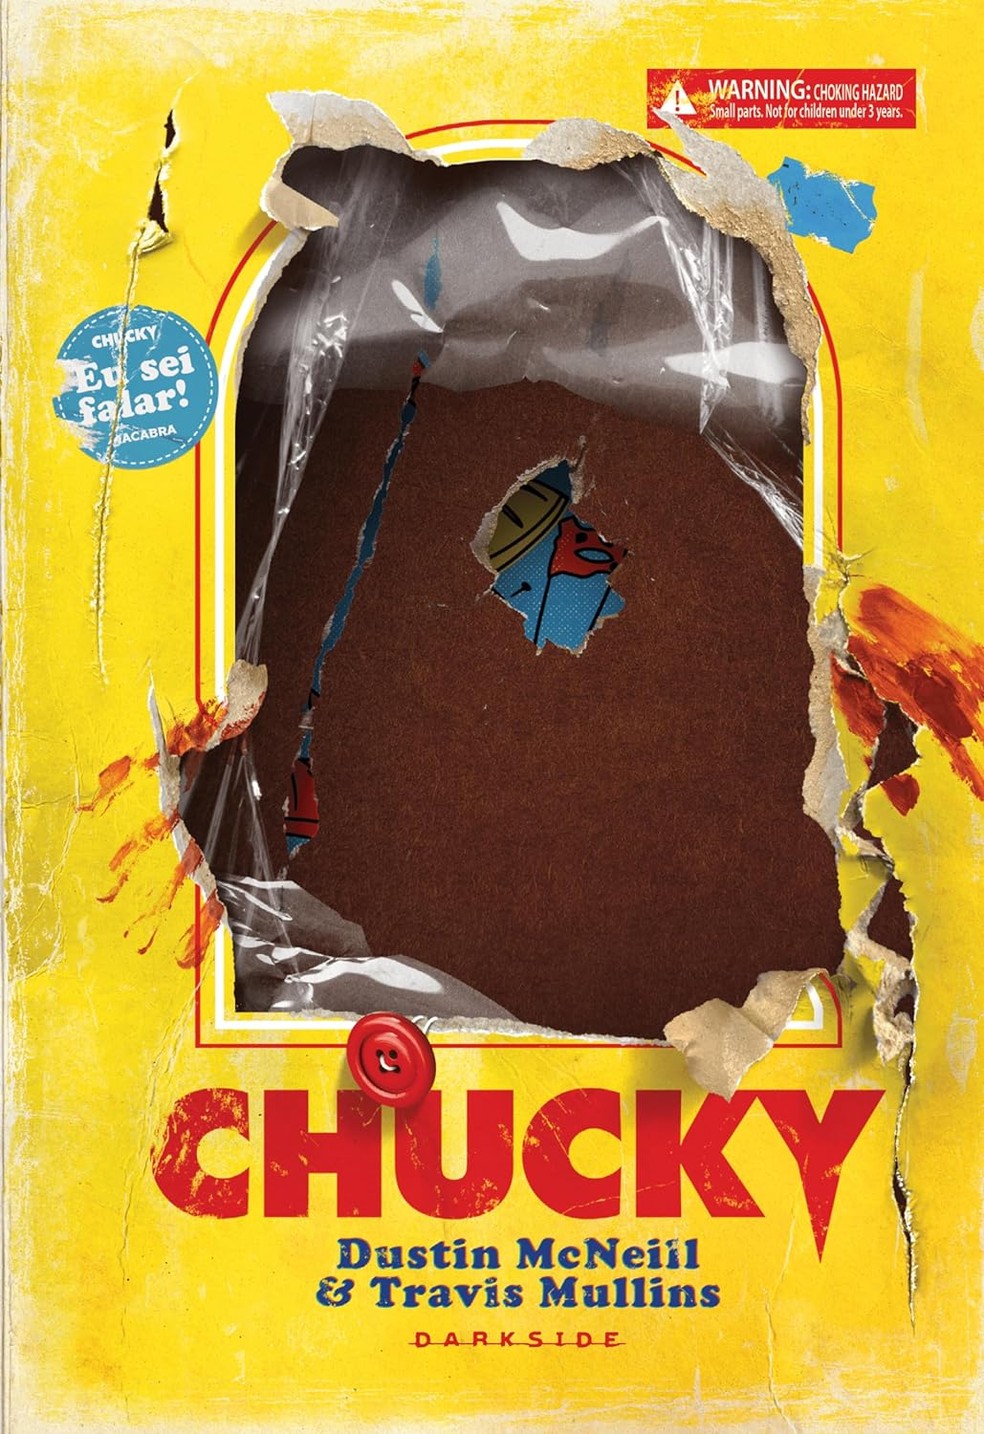 Livro "Chucky: o legado do brinquedo assassino" — Foto: Divulgação